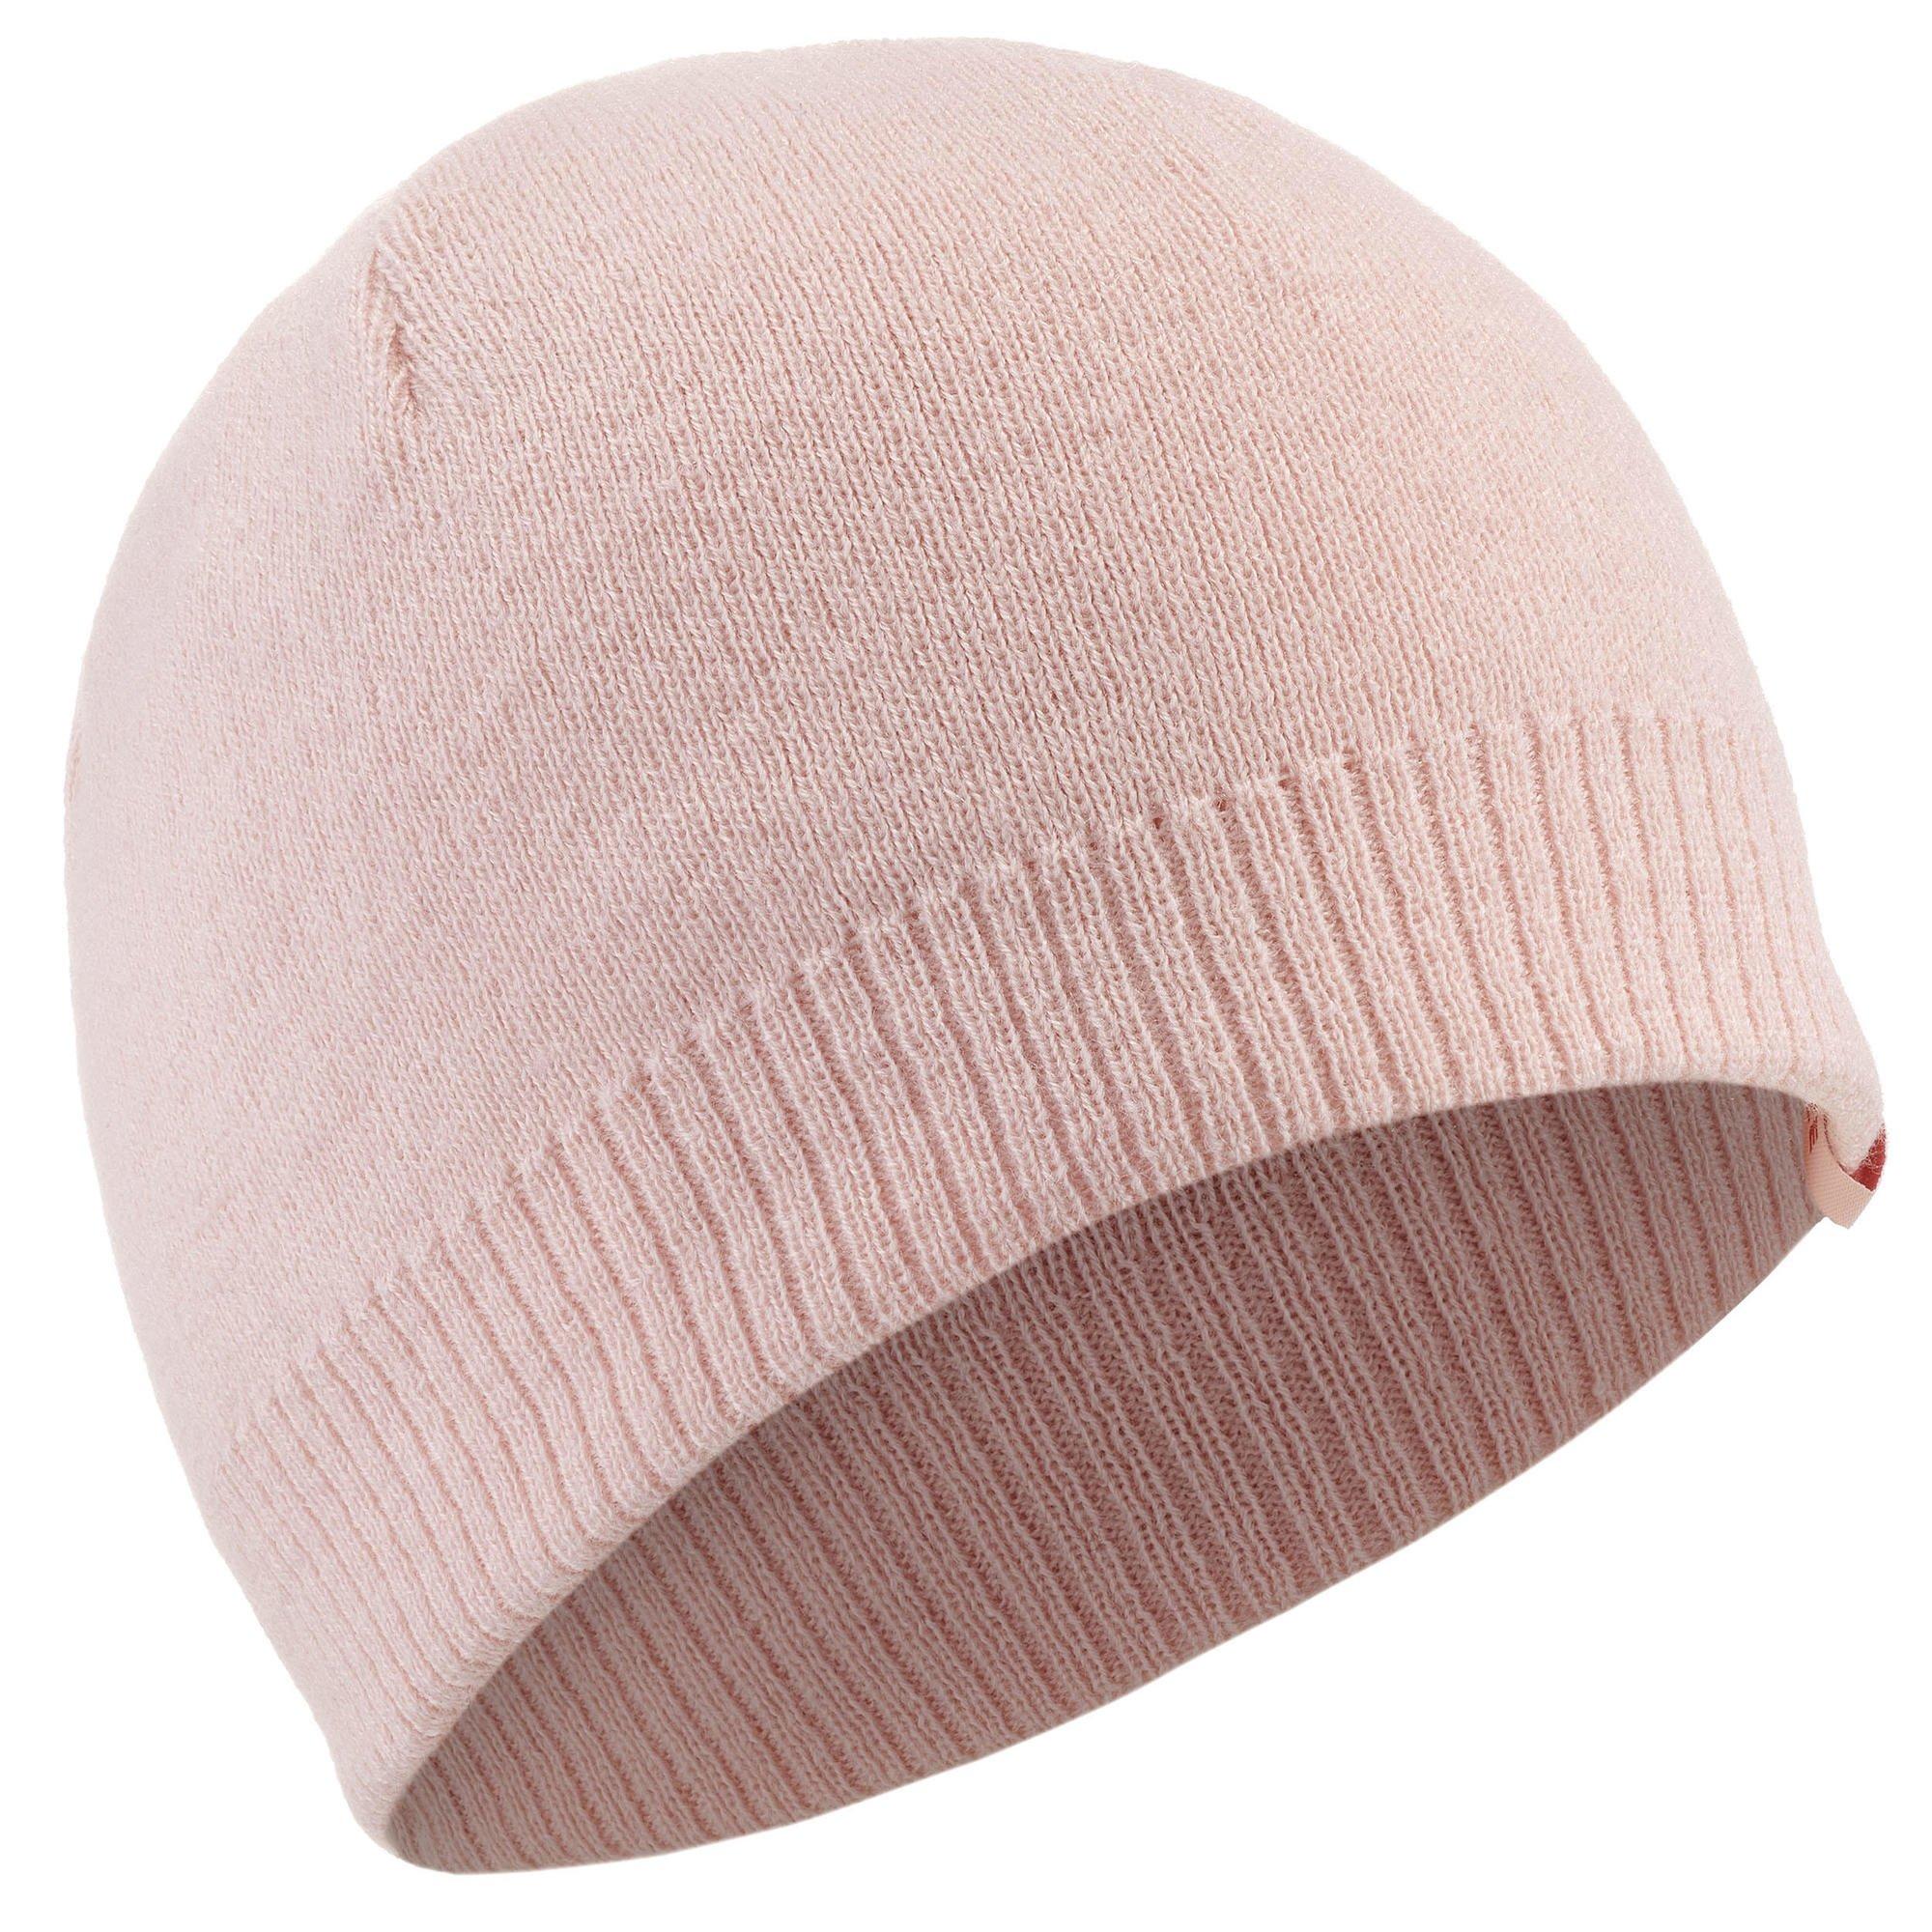 Лыжная шапка Decathlon для взрослых — простая Wedze, розовый ангорская шапка зимняя женская вязаная шапка осенняя теплая однотонная лыжная шапка аксессуар для спорта на открытом воздухе